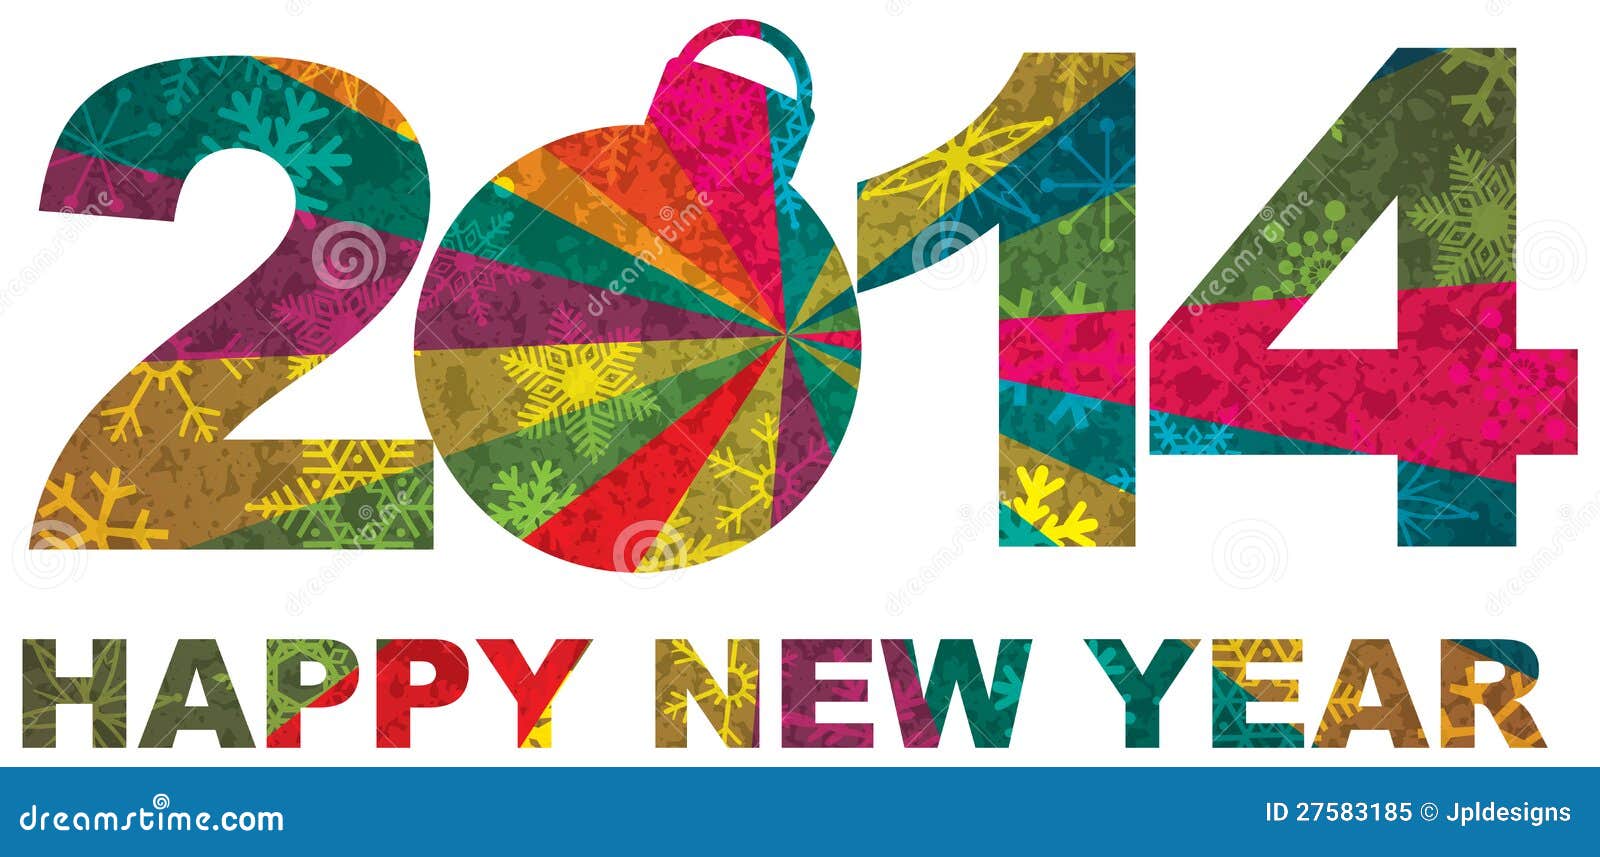 أجمل كفرات للفيس بوك بمناسبة رأس السنة ،العام الجديد 2014 happy new year 13